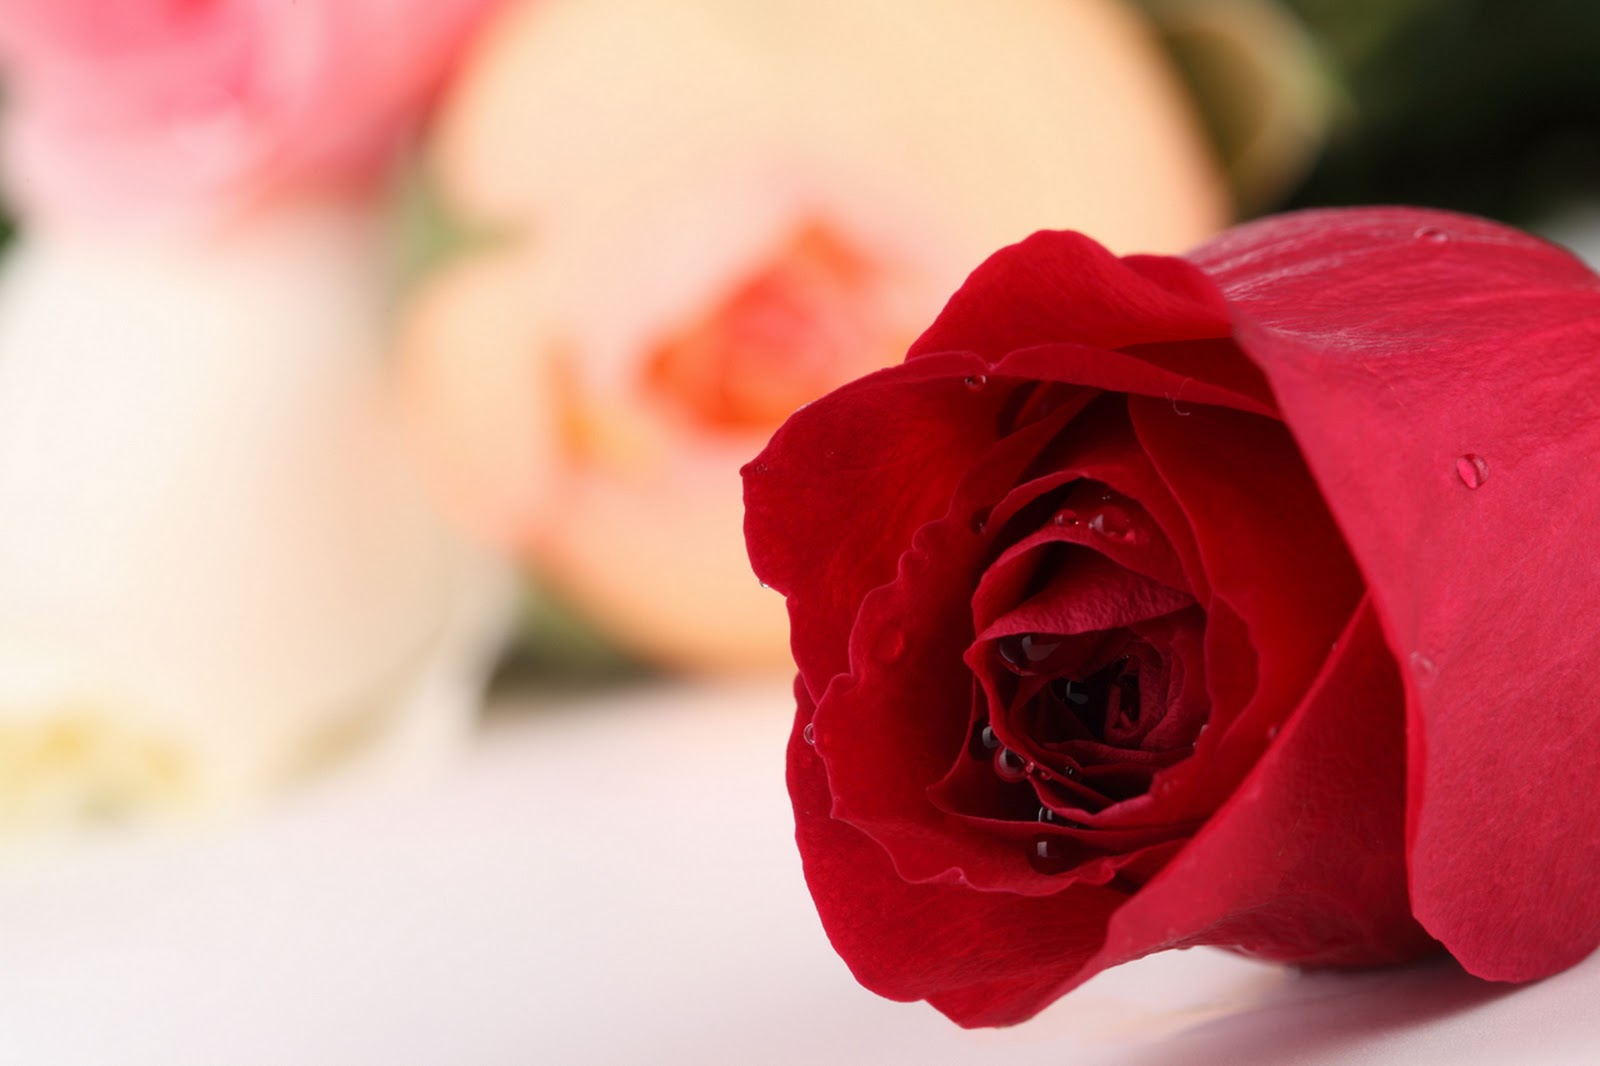 Gambar Bunga Mawar Yang Cantik Cantik Planet Wallpapers